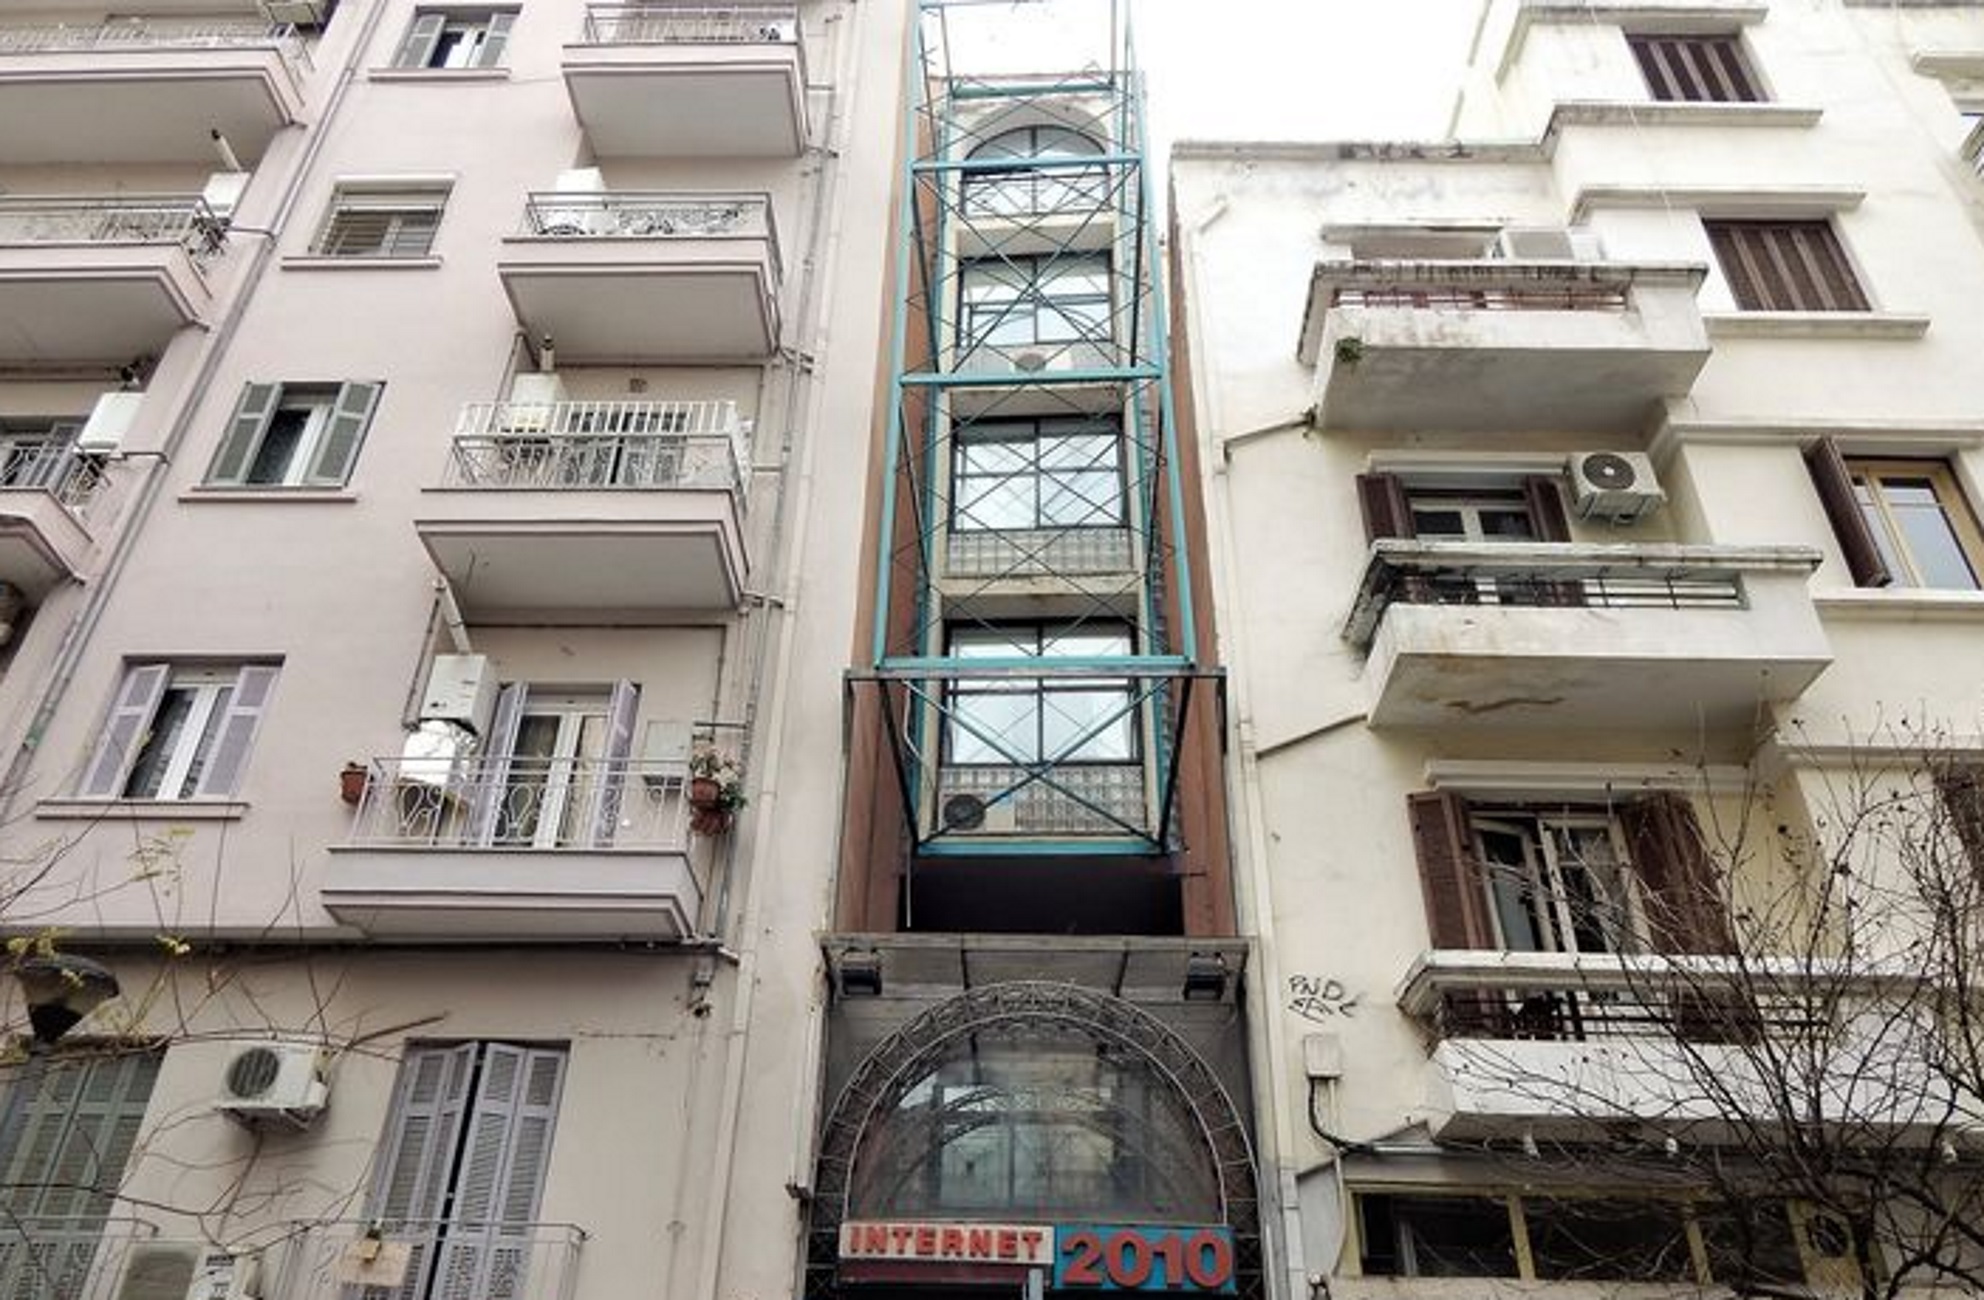 Θεσσαλονίκη: Η πολυκατοικία «σάντουϊτς» που είναι ίσως η στενότερη σε ολόκληρη την πόλη